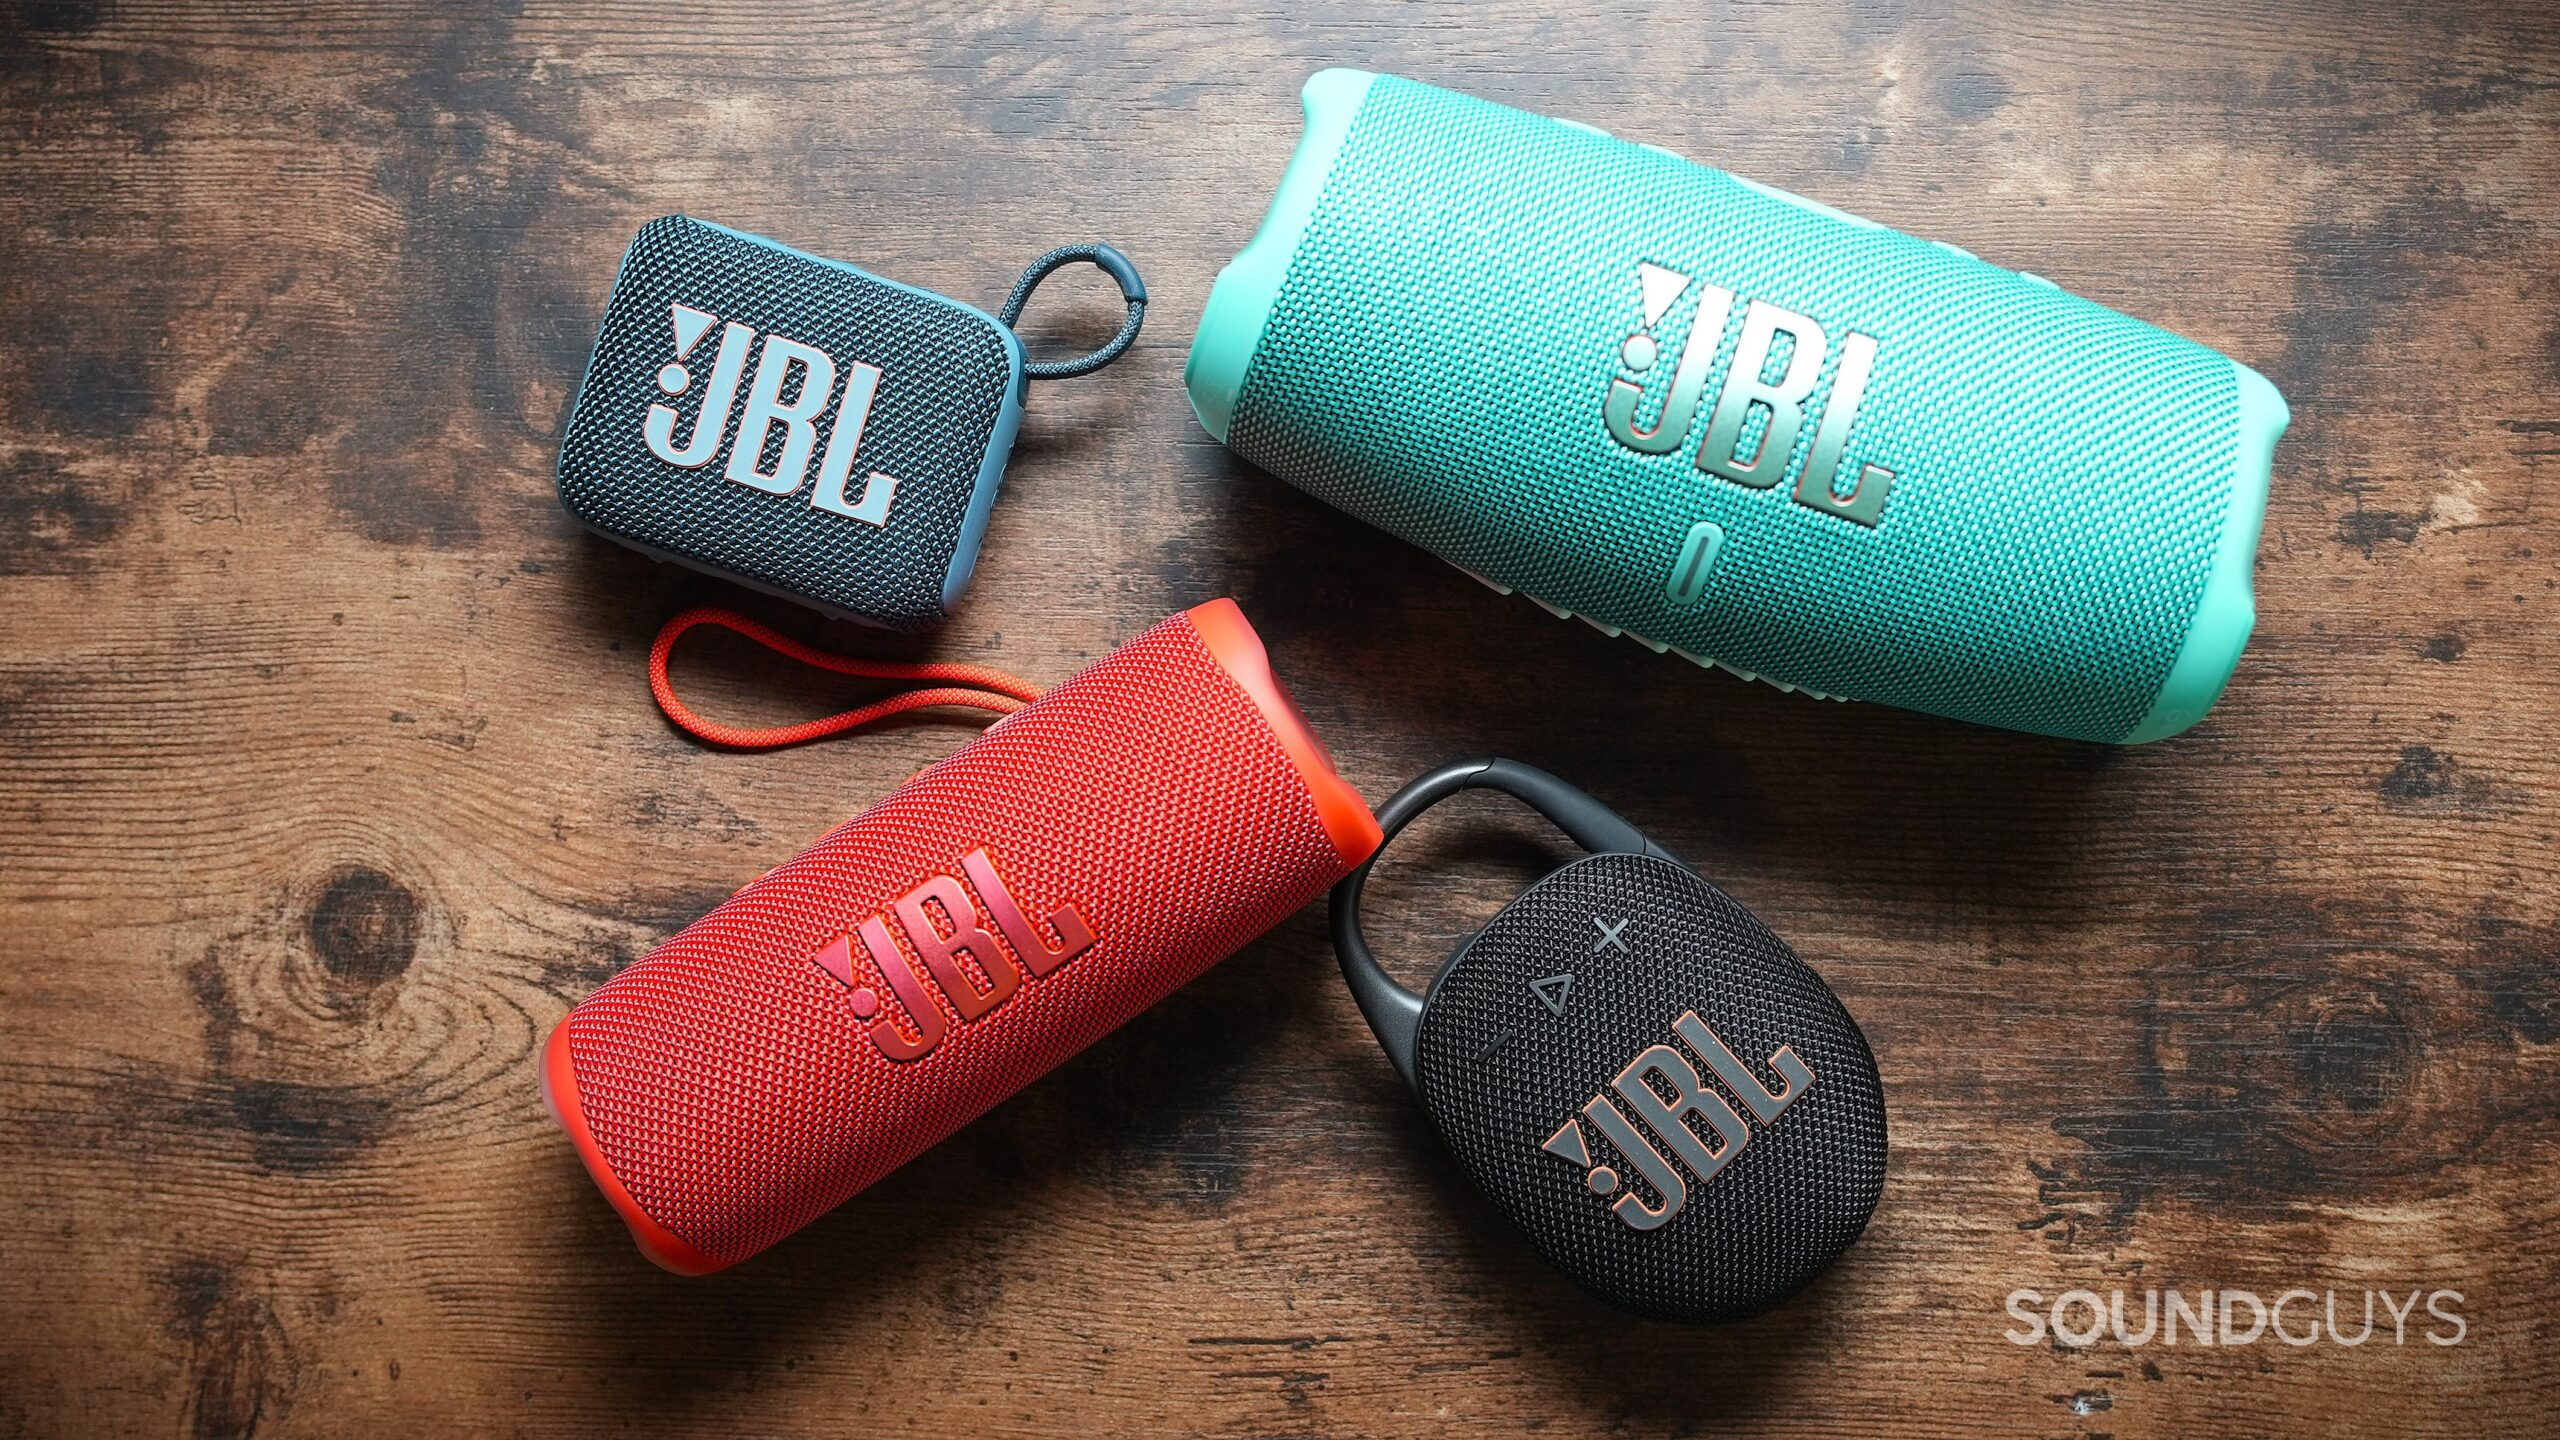 JBL portable speakers